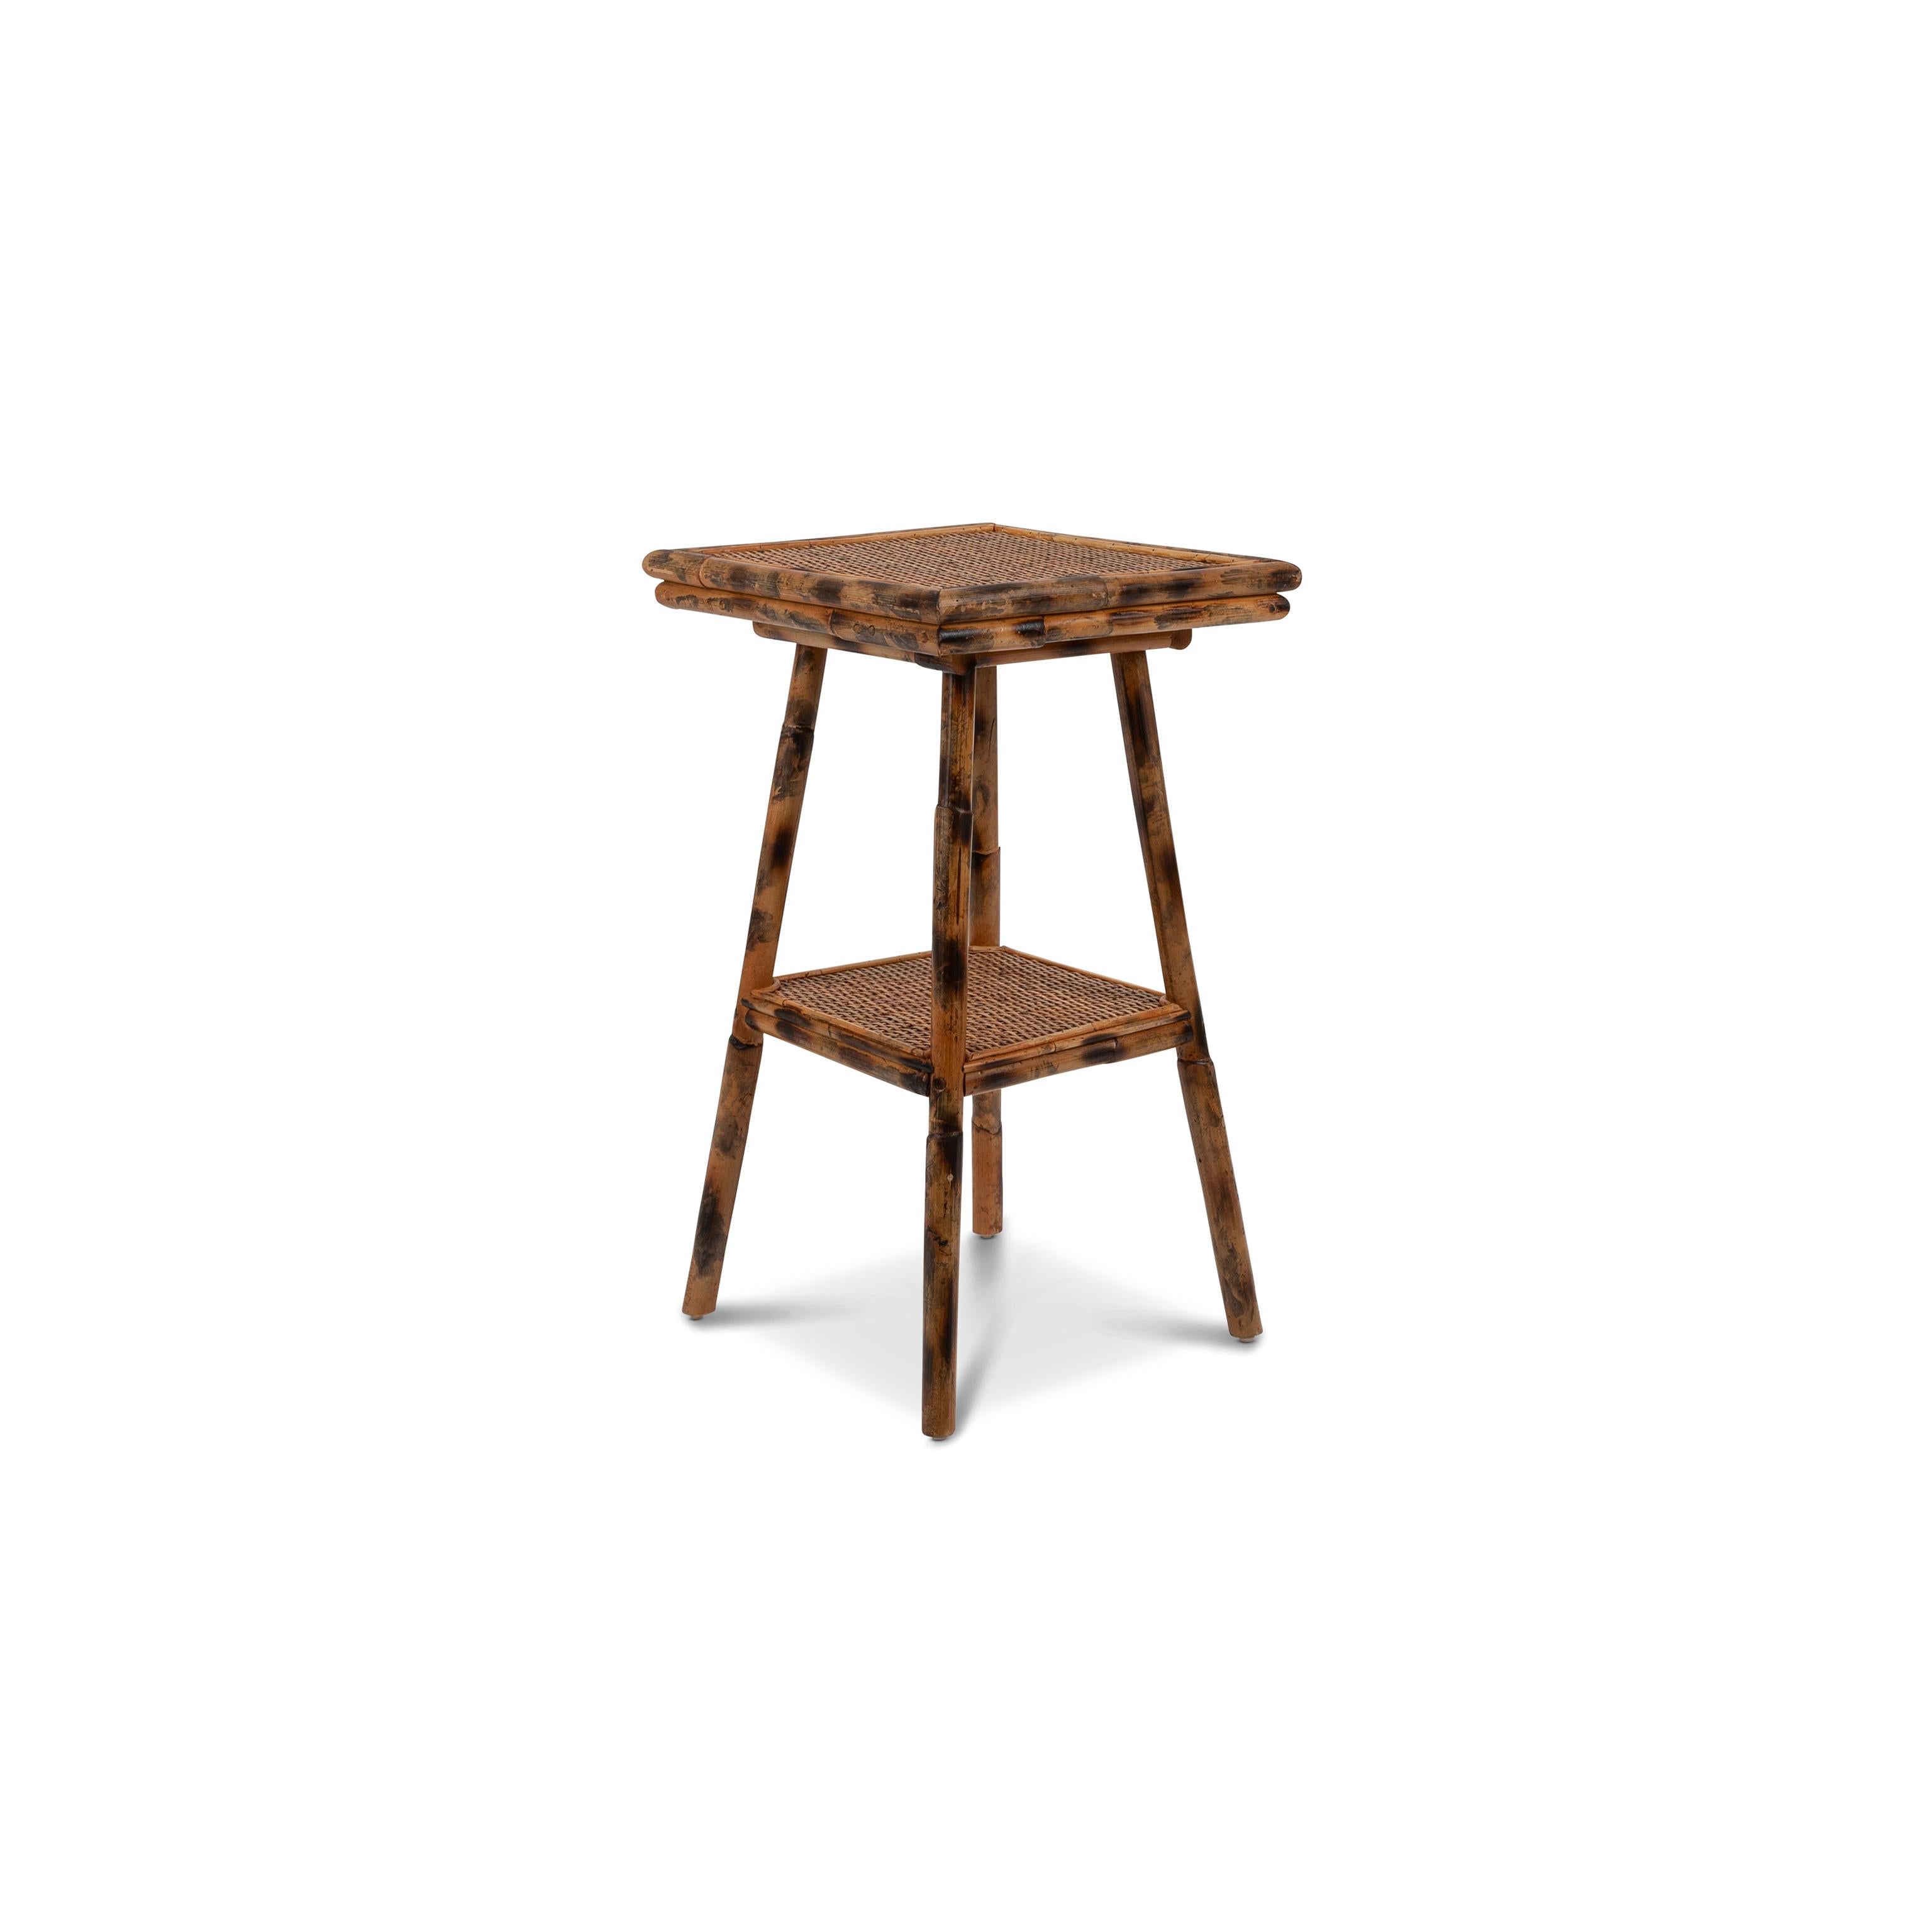 La table d'appoint Pimlico est soignée et chic : ses pieds en faux bambou, fabriqués à la main à partir d'un magnifique rotin torché, rappellent les tables anciennes d'une époque révolue. Deux plateaux de table permettent de prendre une tasse de thé